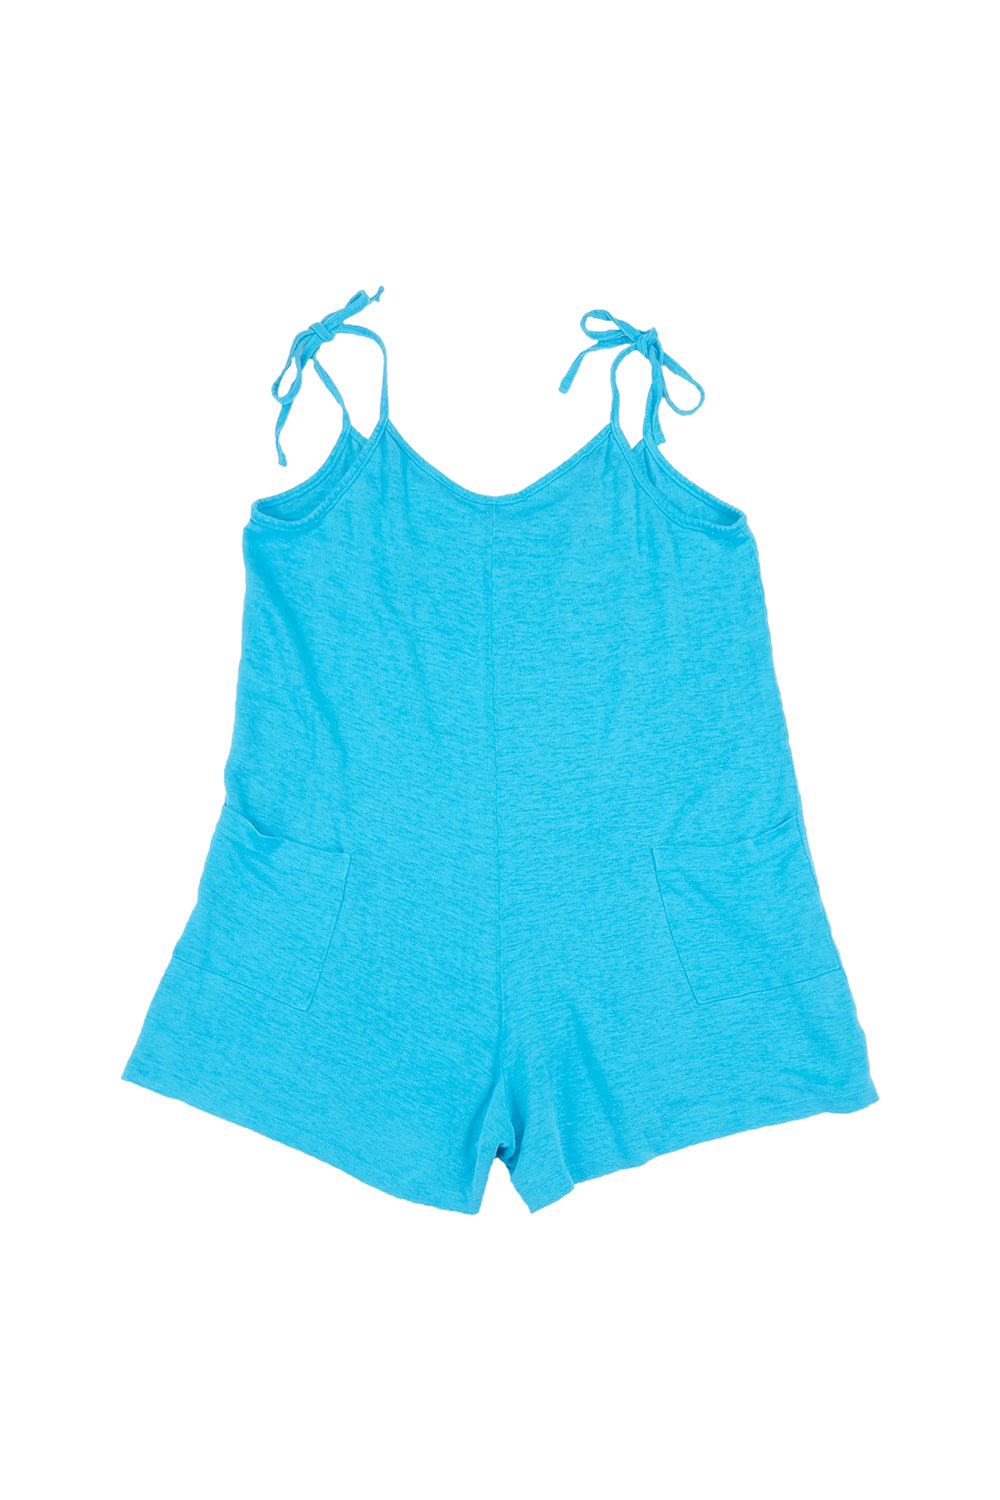 100% Hemp Sespe Short - Sale Colors | Jungmaven Hemp Clothing & Accessories / Color: Turquoise